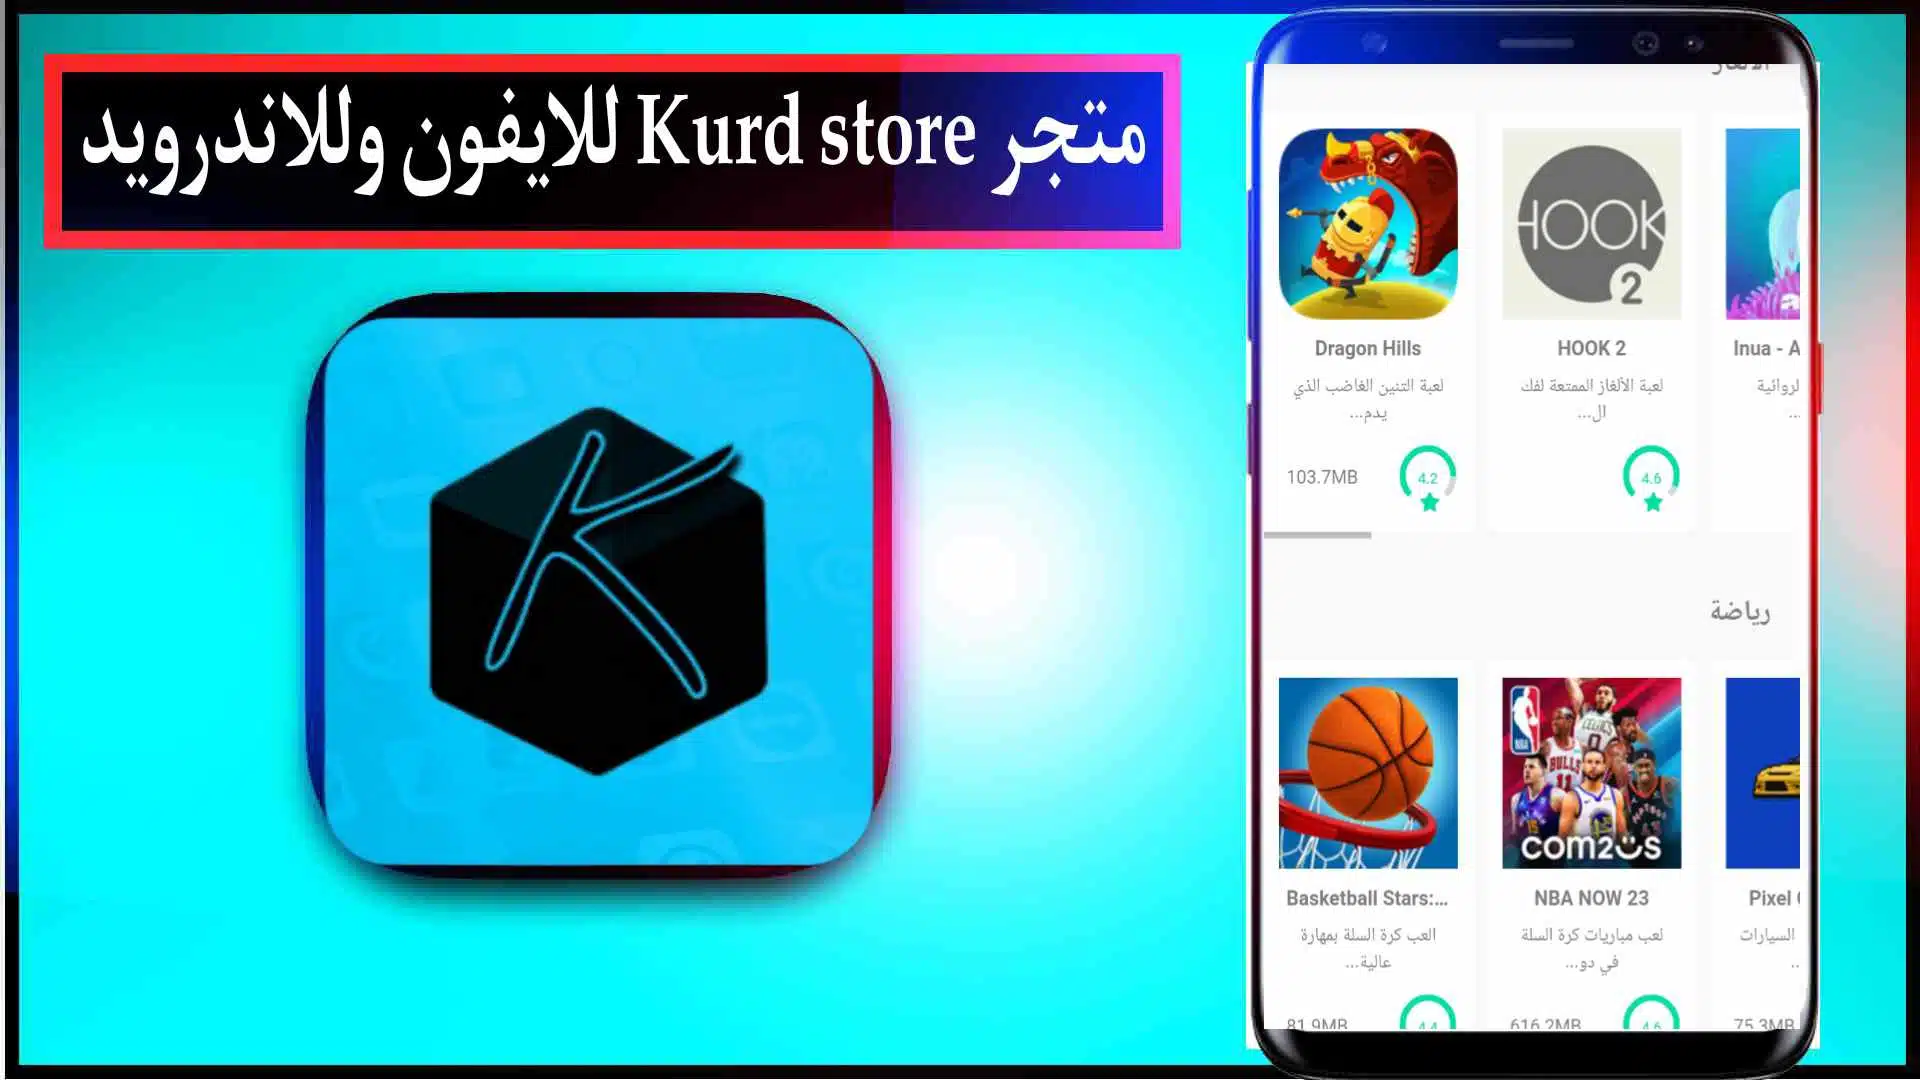 تحميل تطبيق كورد ستور Kurd store للايفون وللاندرويد اخر اصدار 2023 2